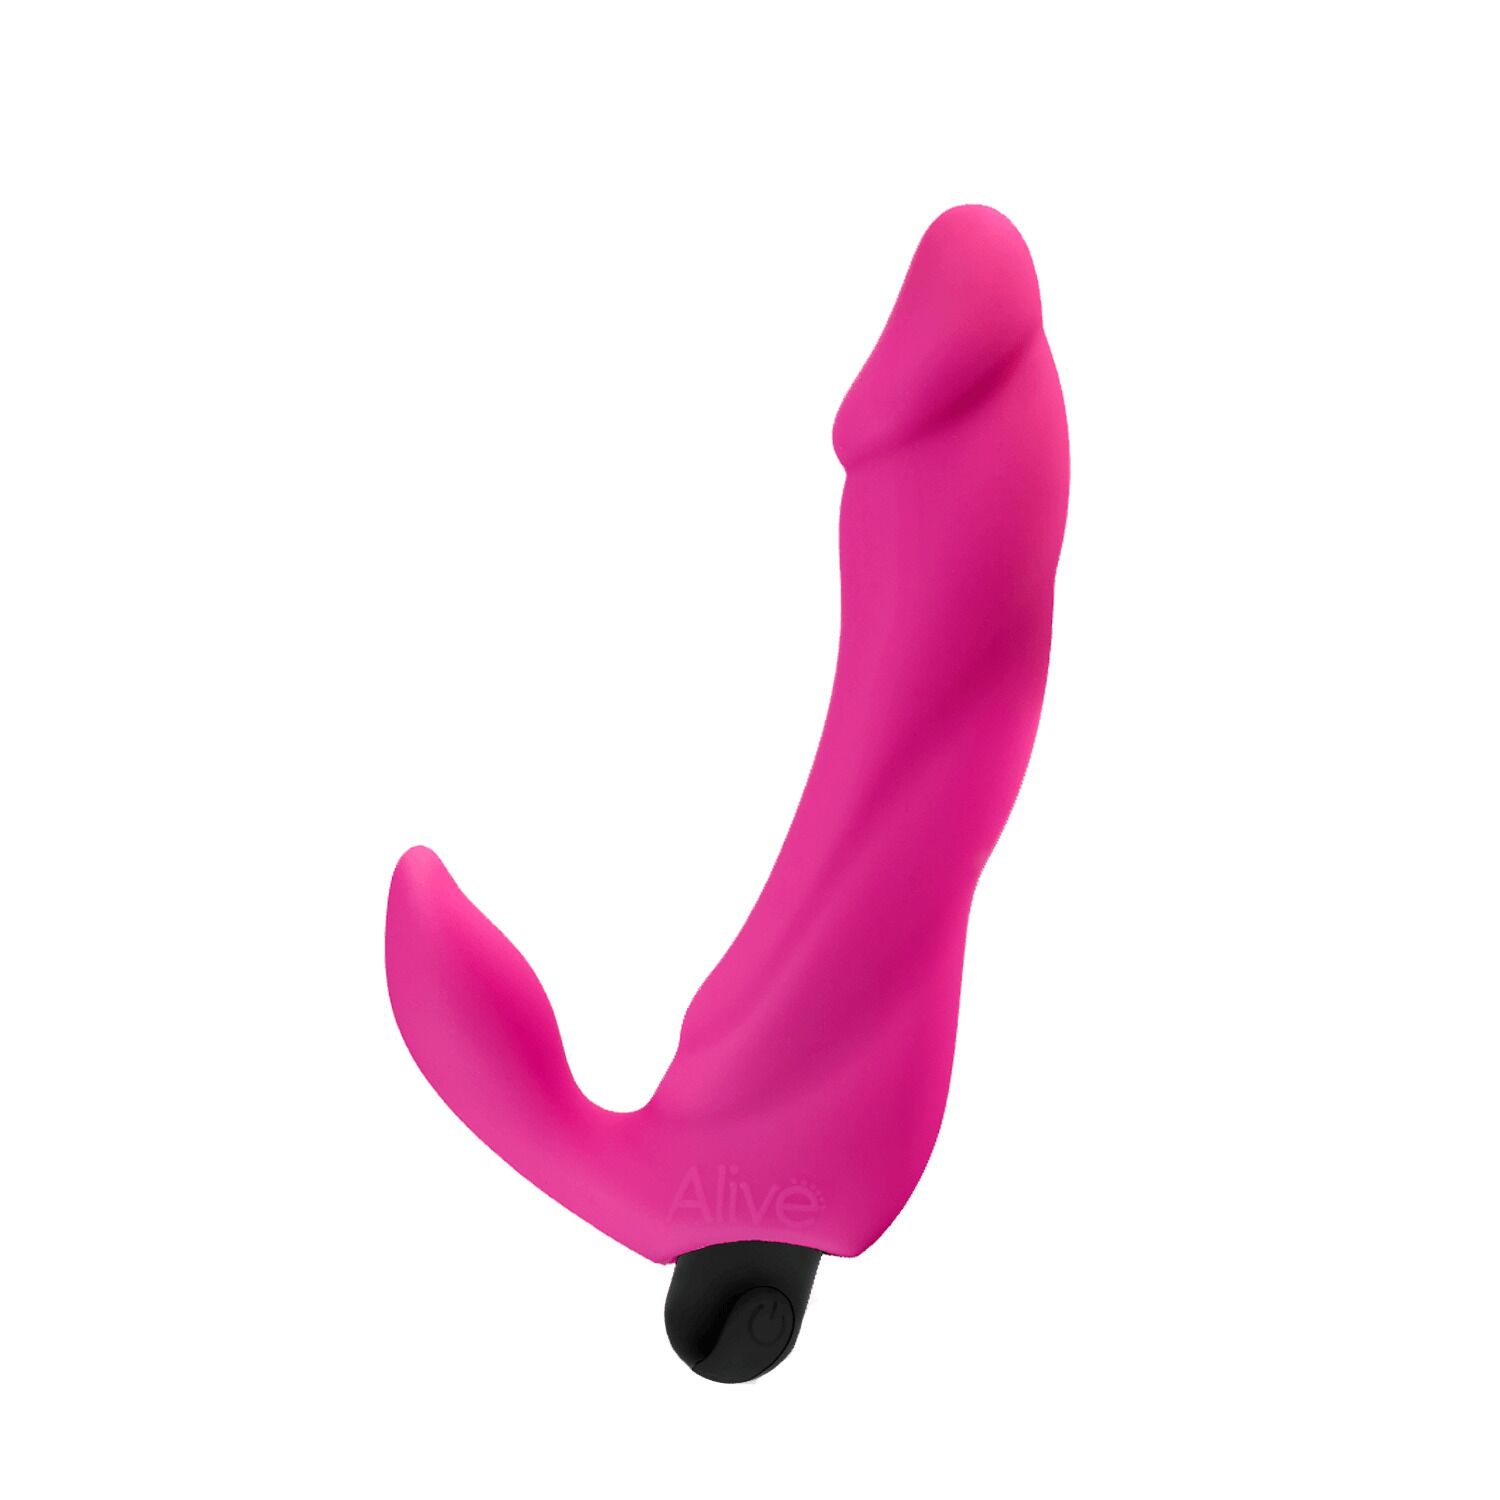 Вибратор вагинально-клиторальный Alive Bifun Pro, Pink, перез�аряжаемый